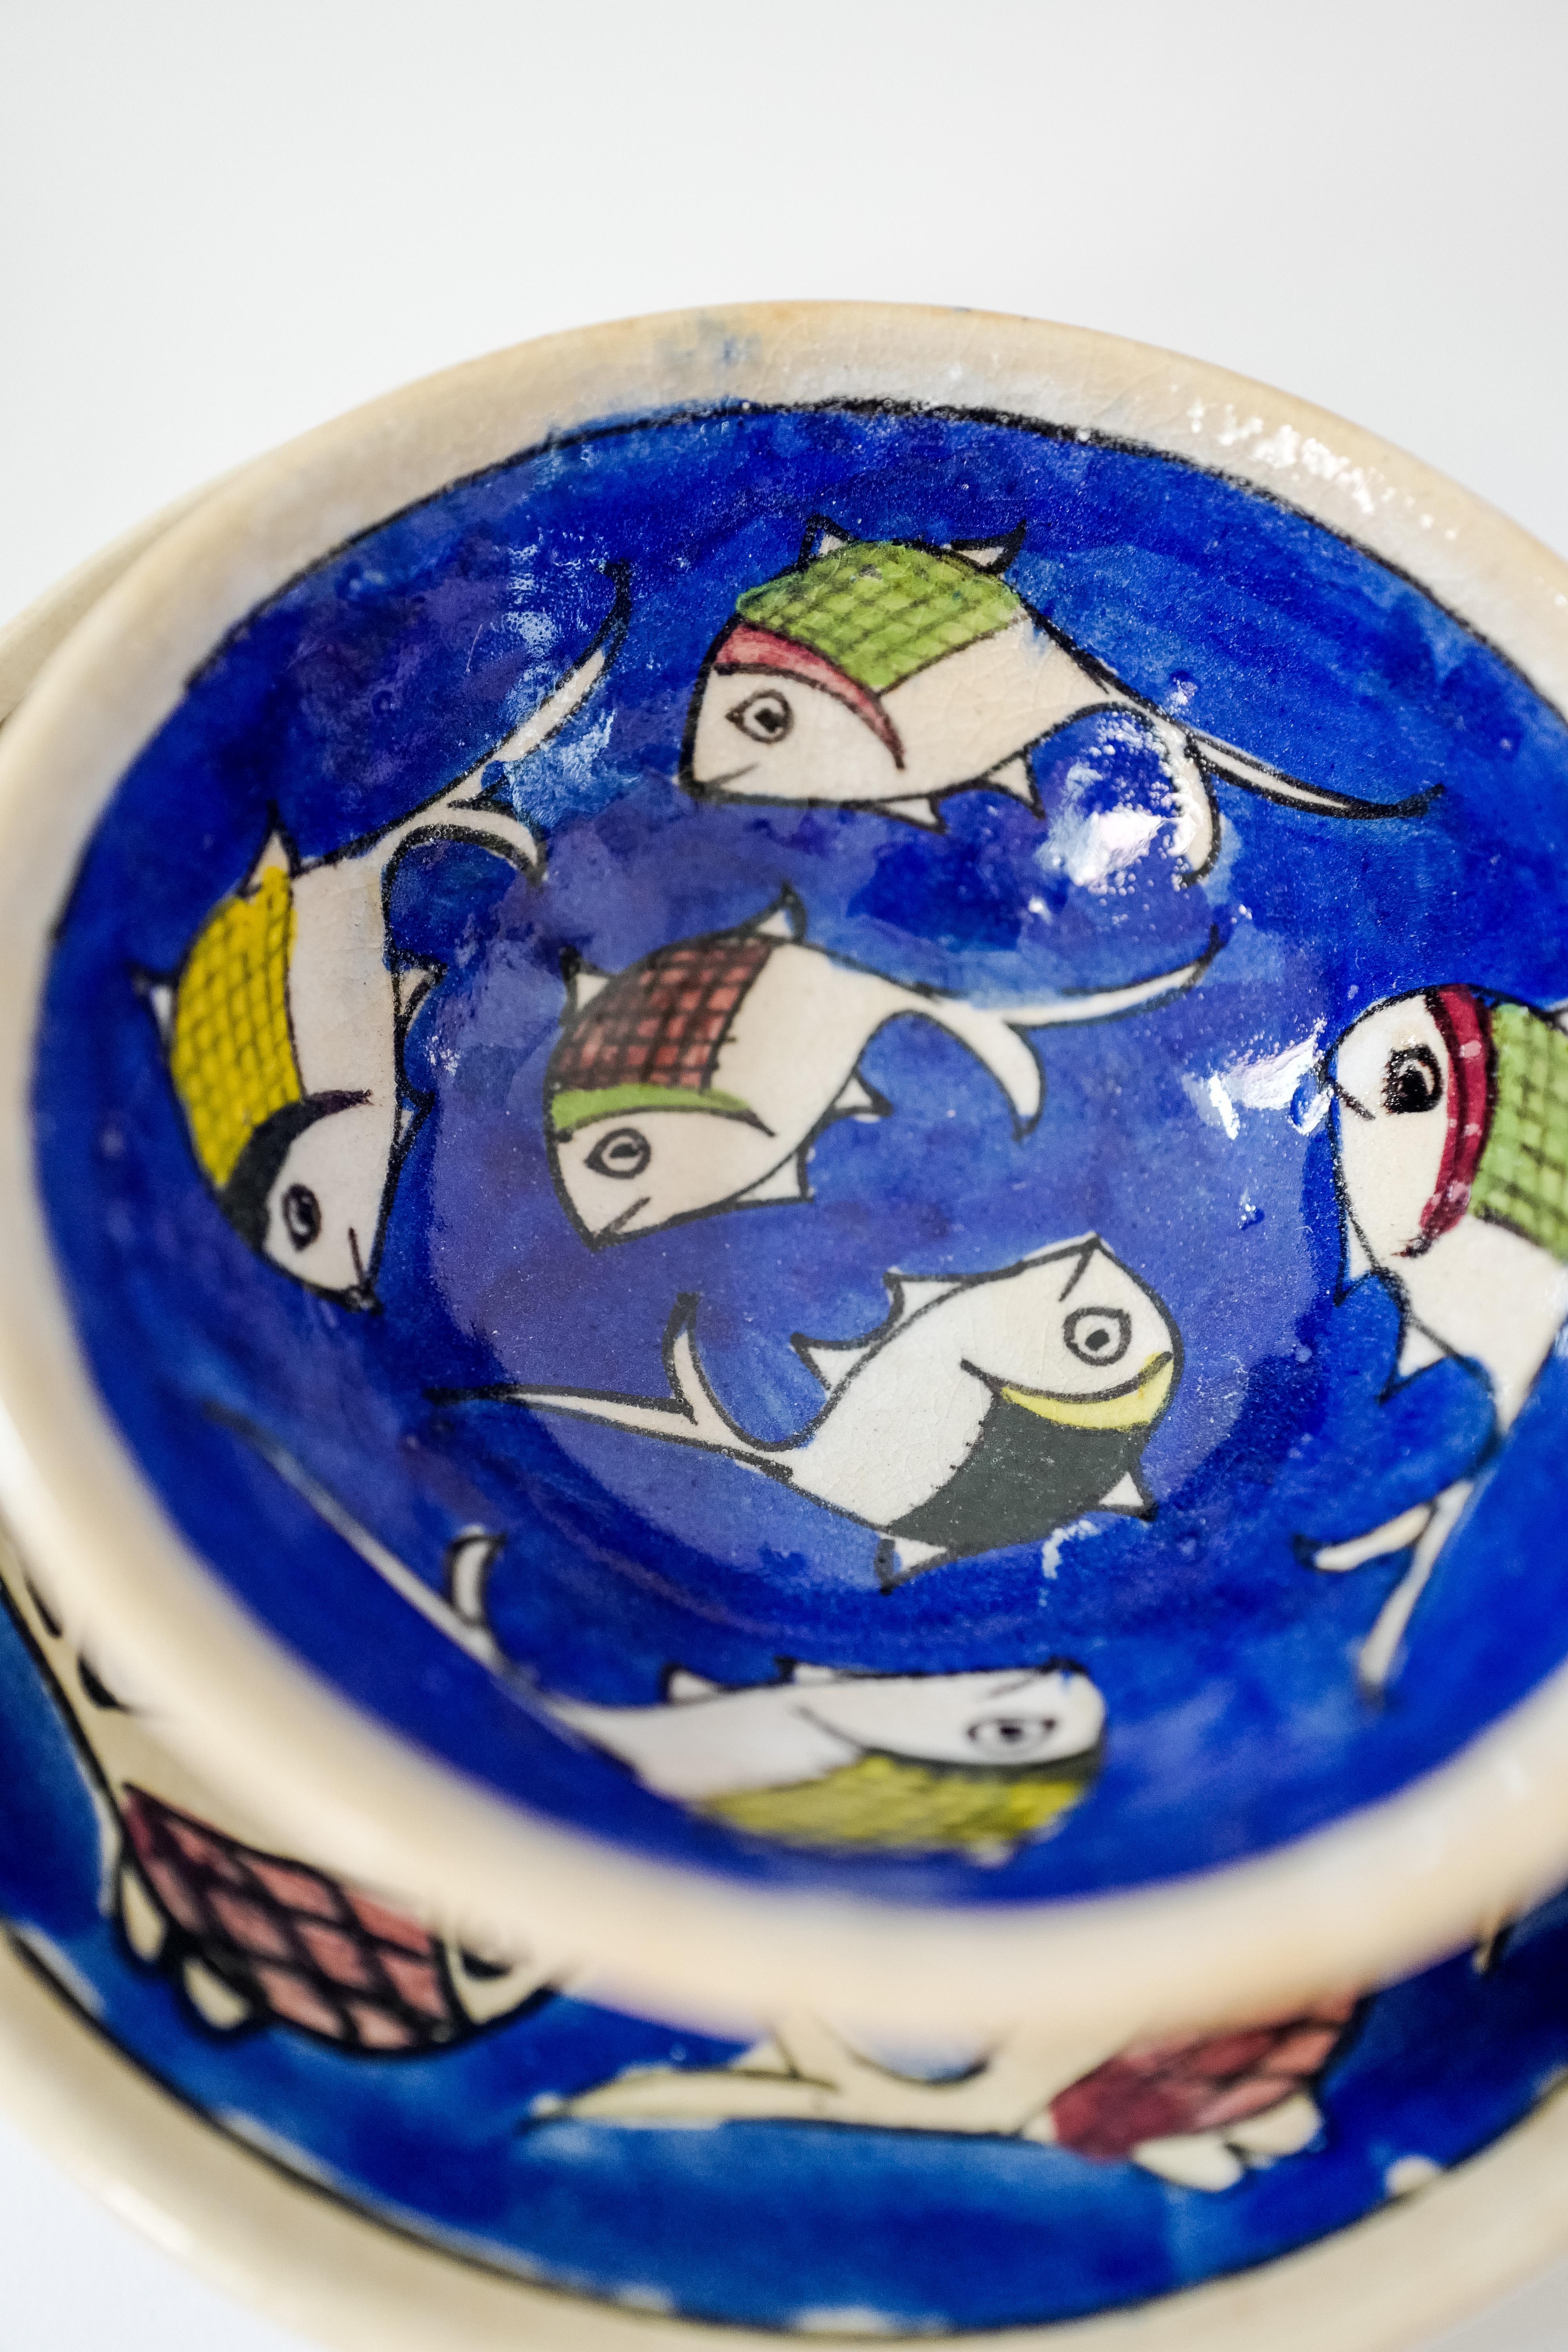 Ein schöner Satz von acht italienischen Keramikgeschirrteilen, die von Hand blau mit Fischmotiven bemalt sind. Das Set enthält vier Essteller und vier Schalen aus Sizilien, Italien. Neu hergestellt und handgefertigt in einer antiken Technik, so dass